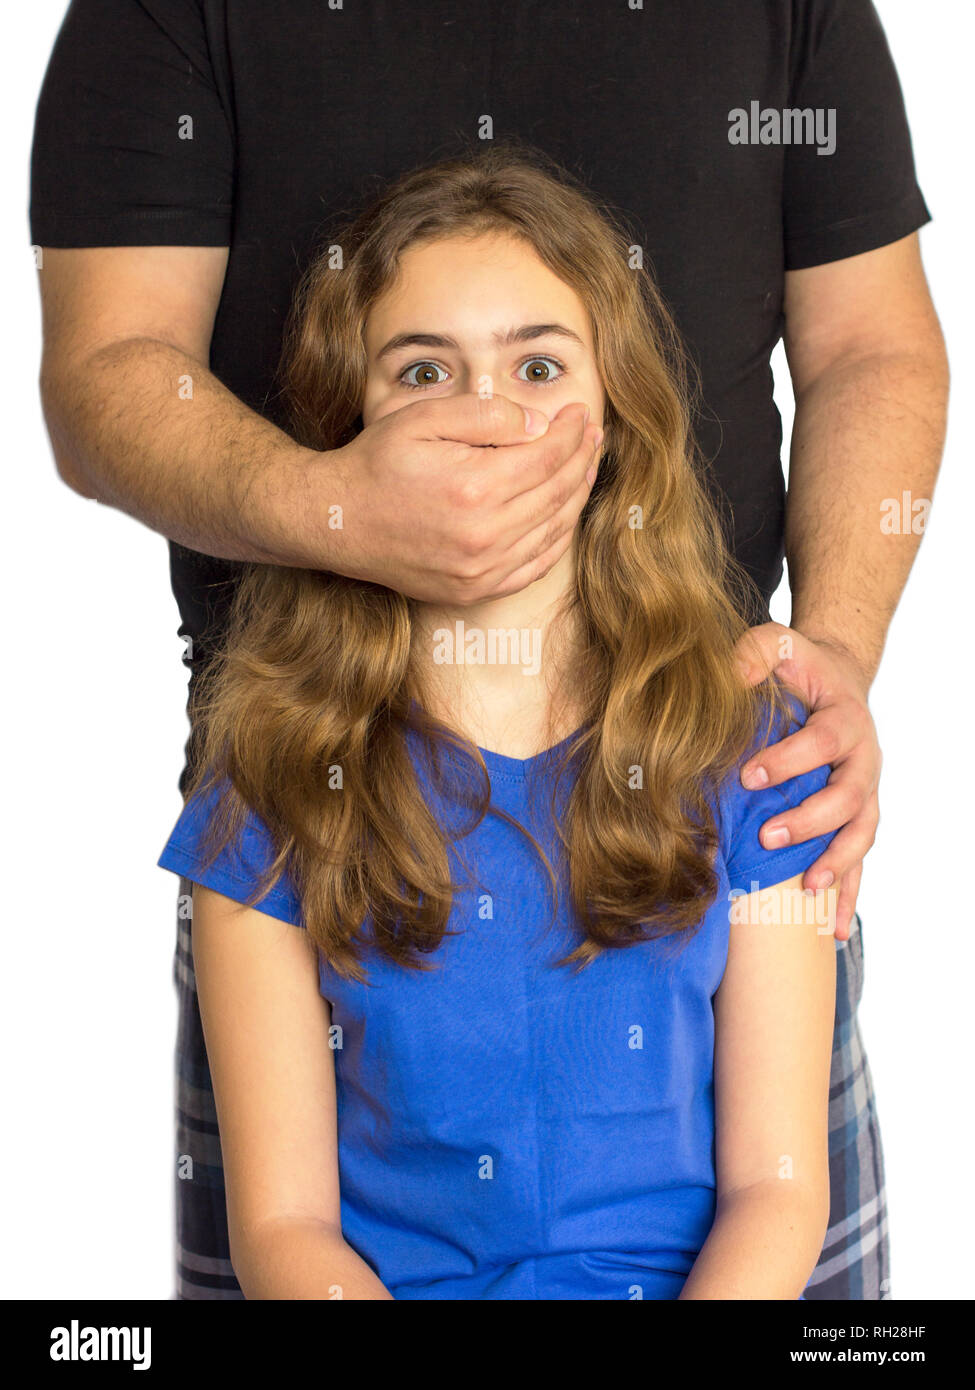 Kindesmissbrauch, Gewalt in der Familie. Mann fährt Mädchen Mund mit seiner Hand Stockfoto